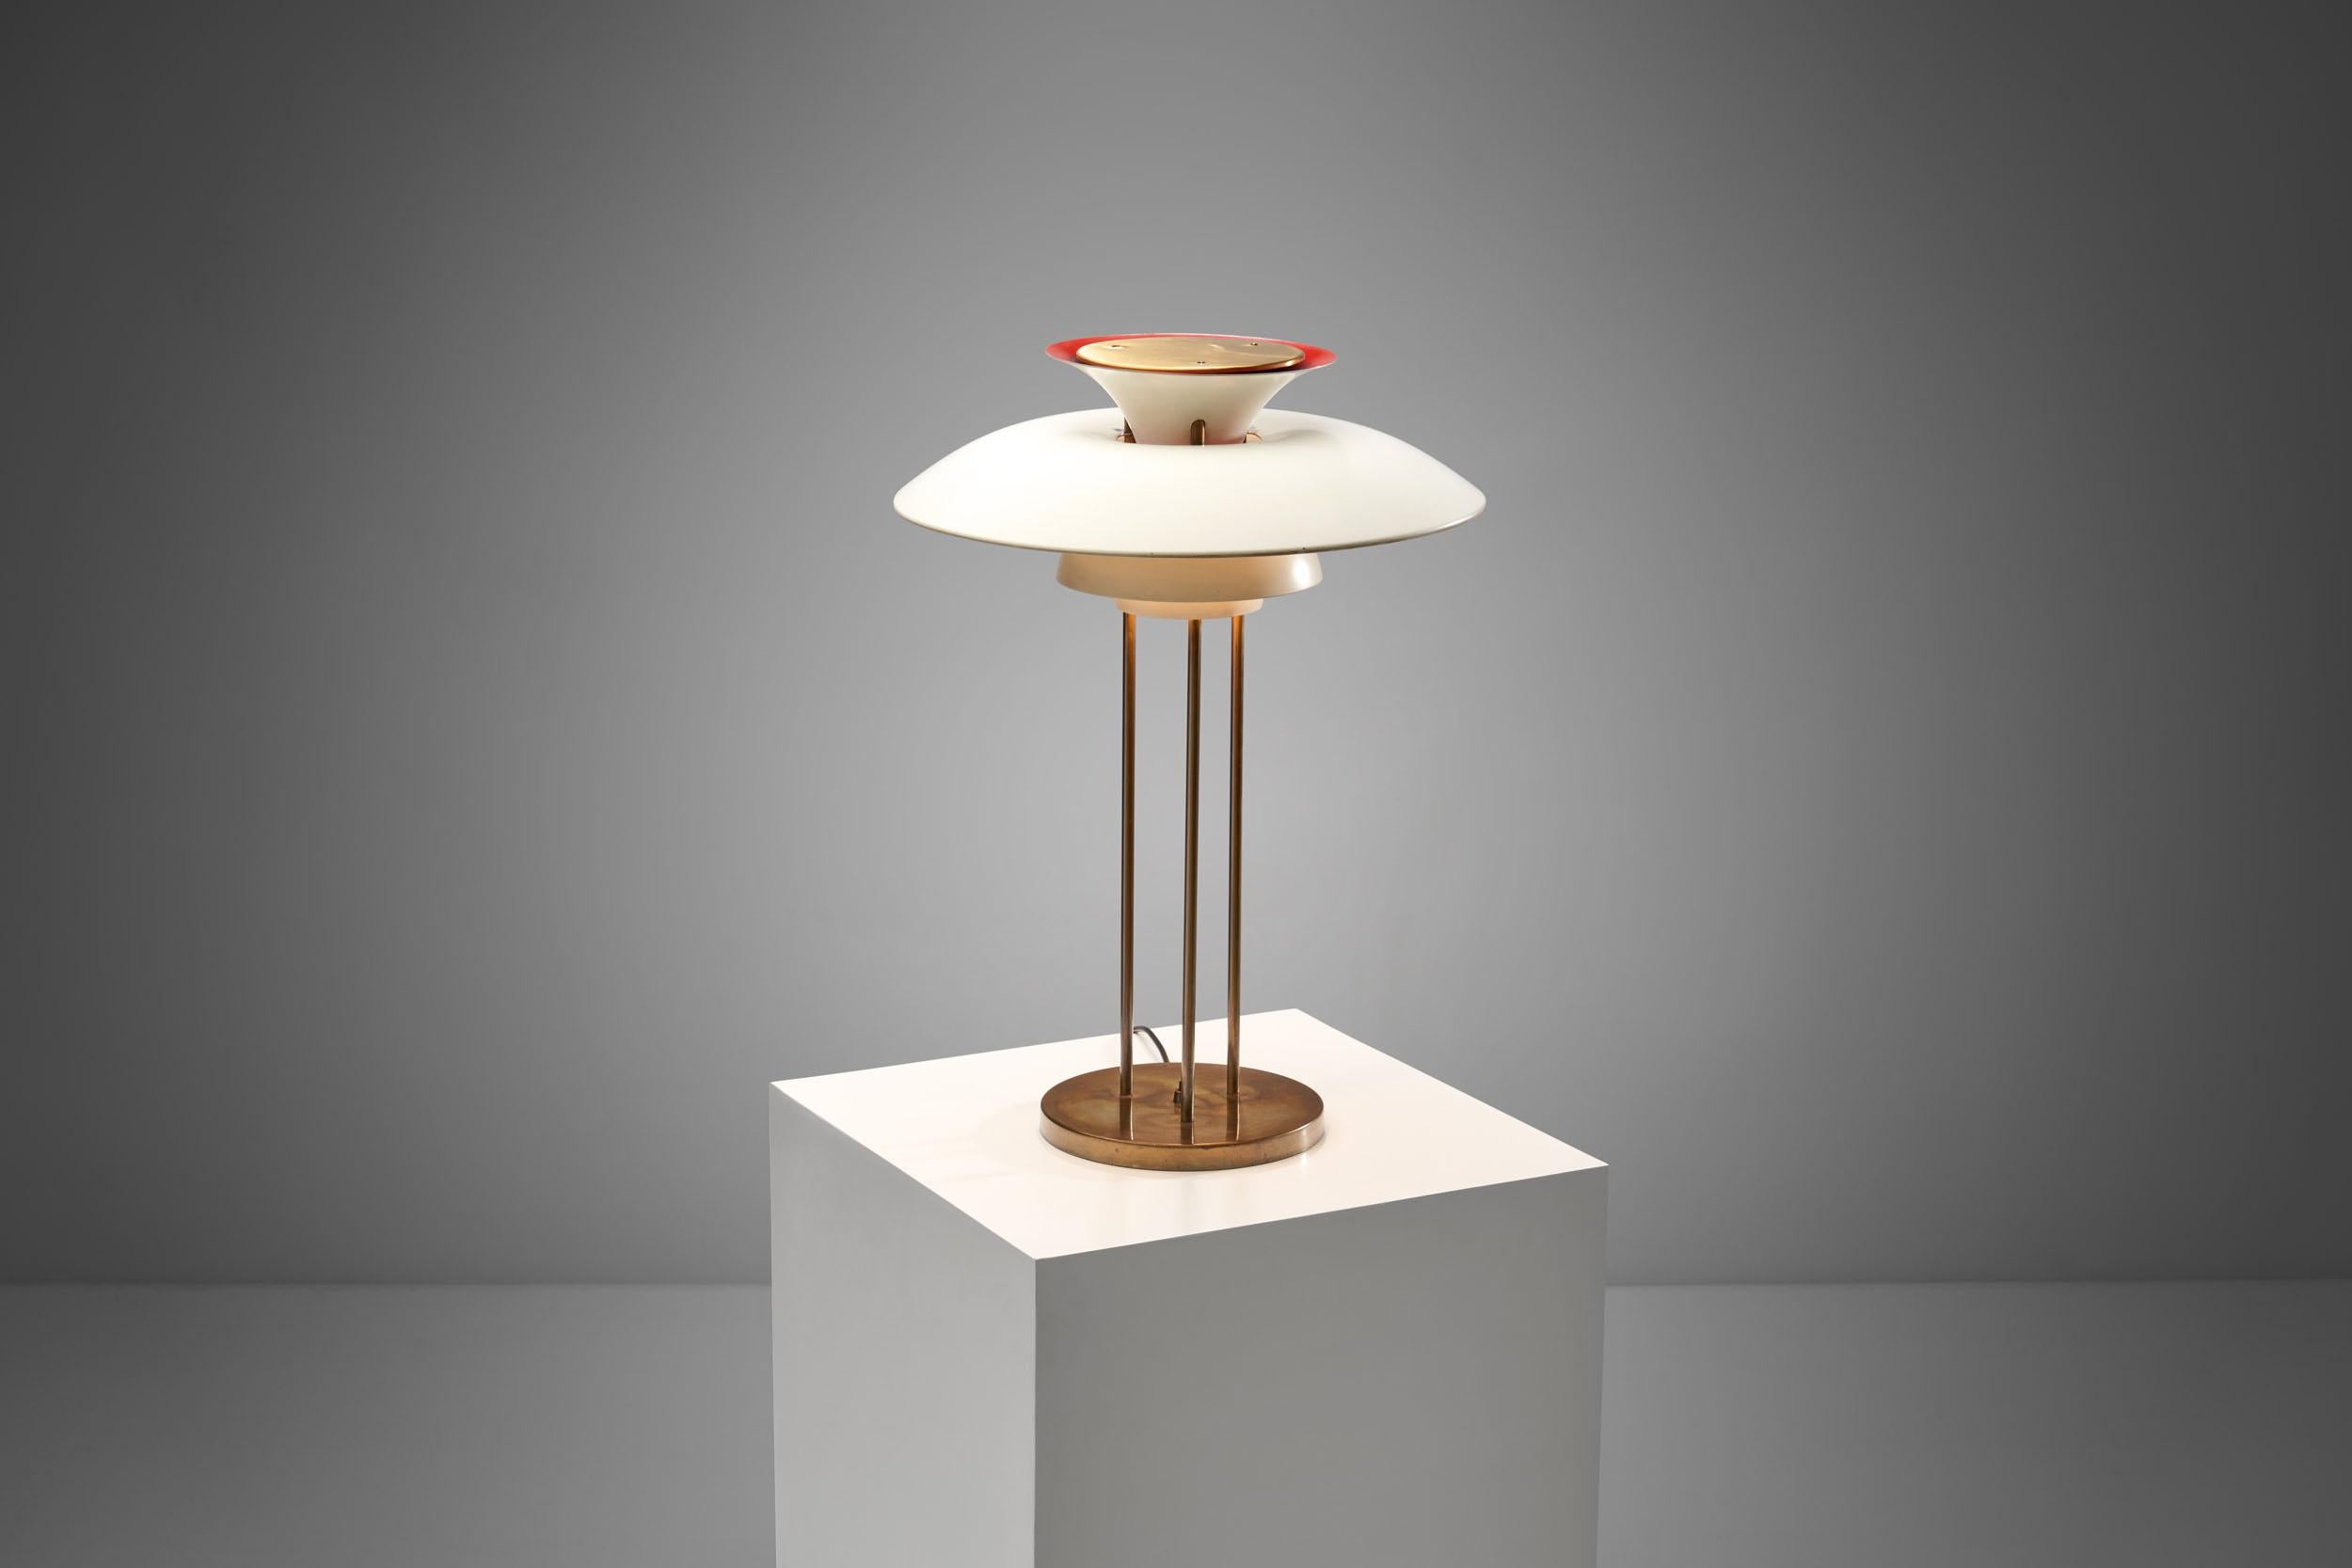 Danish Poul Henningsen “PH-5” Table Lamp for Louis Poulsen, Denmark, 1958